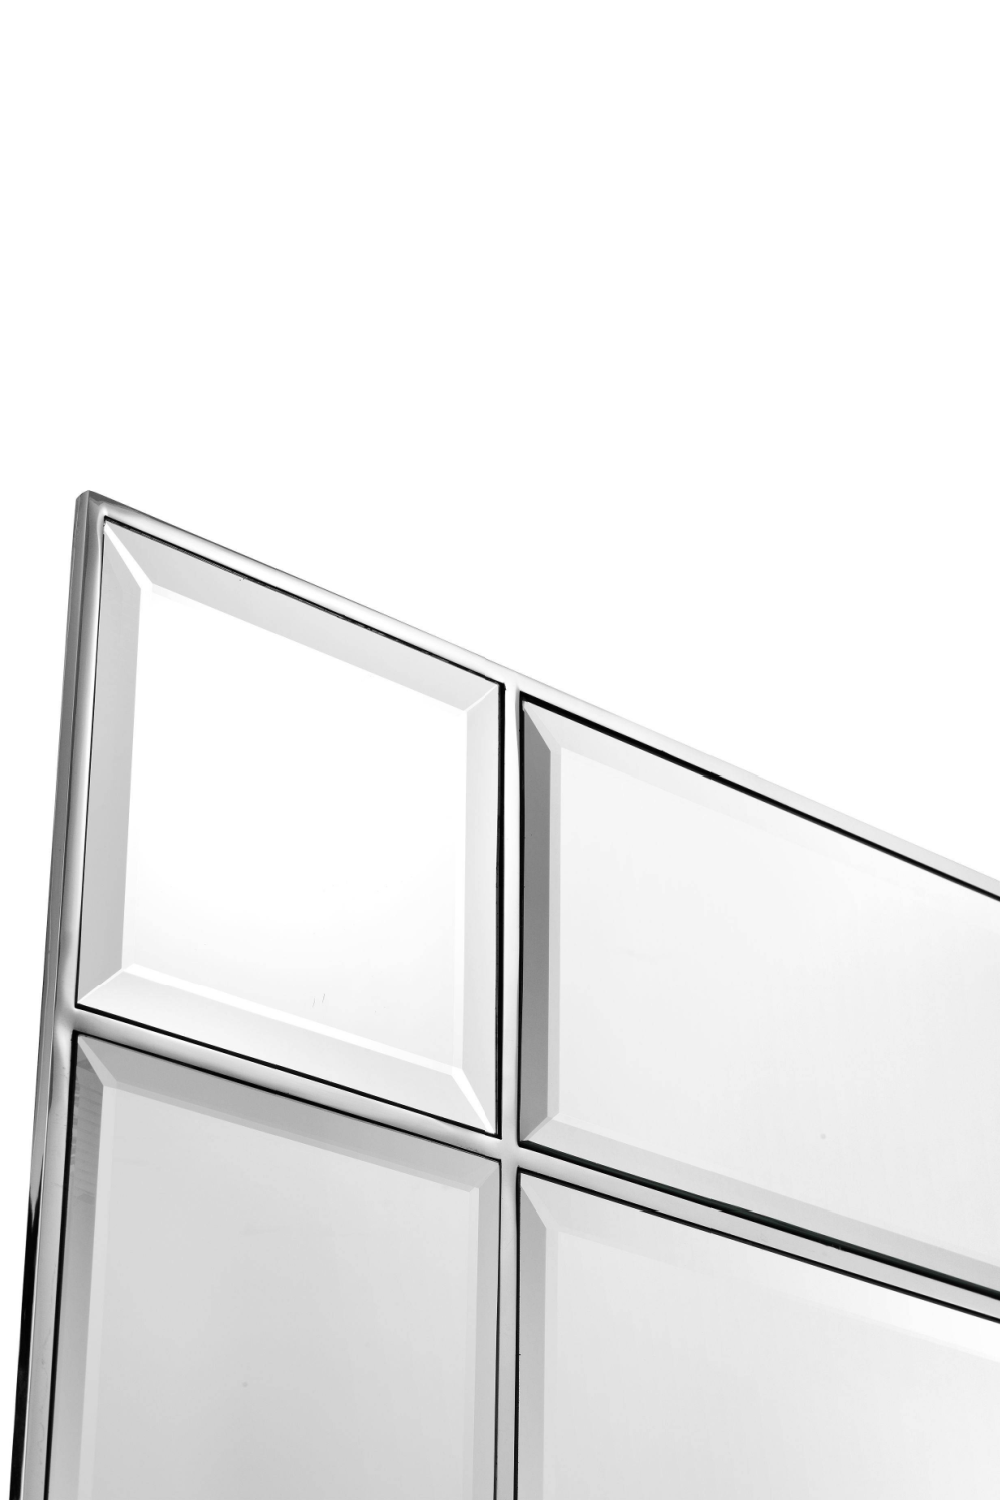 Silver Mirror With 2 Flushmounts | Eichholtz Beaumont | Oroa.com